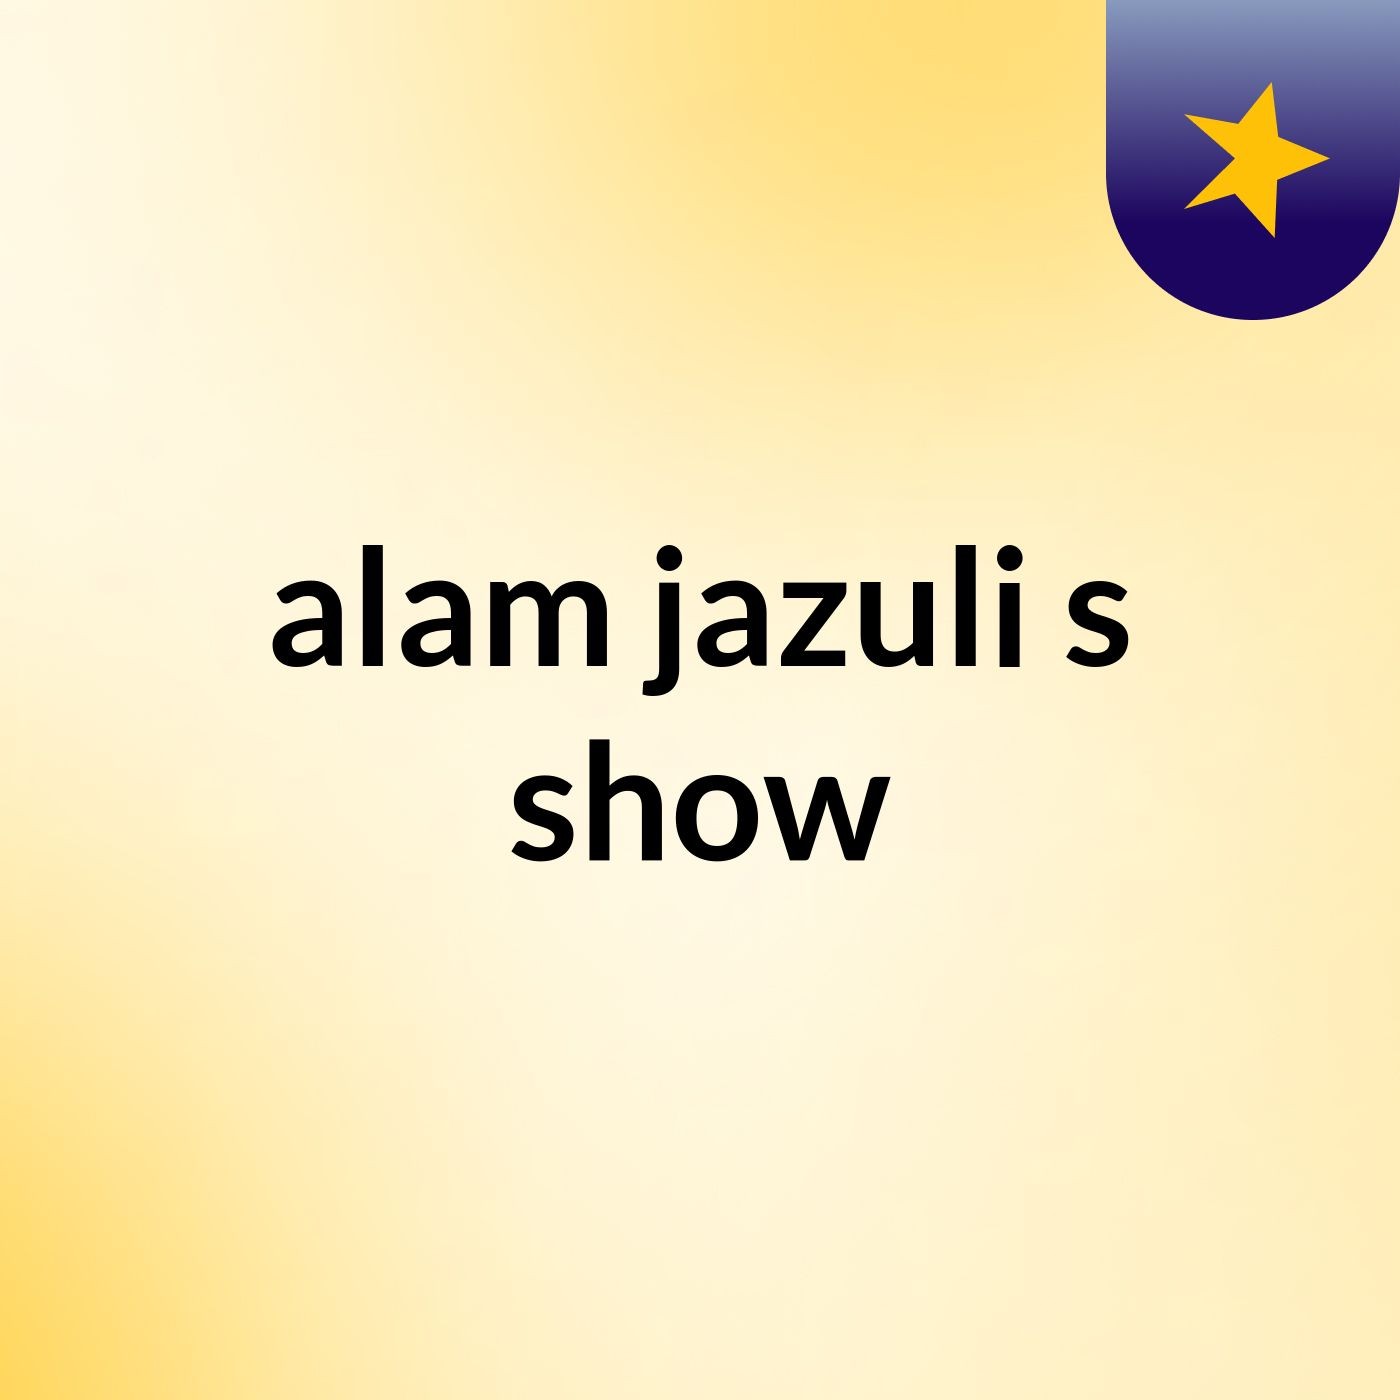 alam jazuli's show